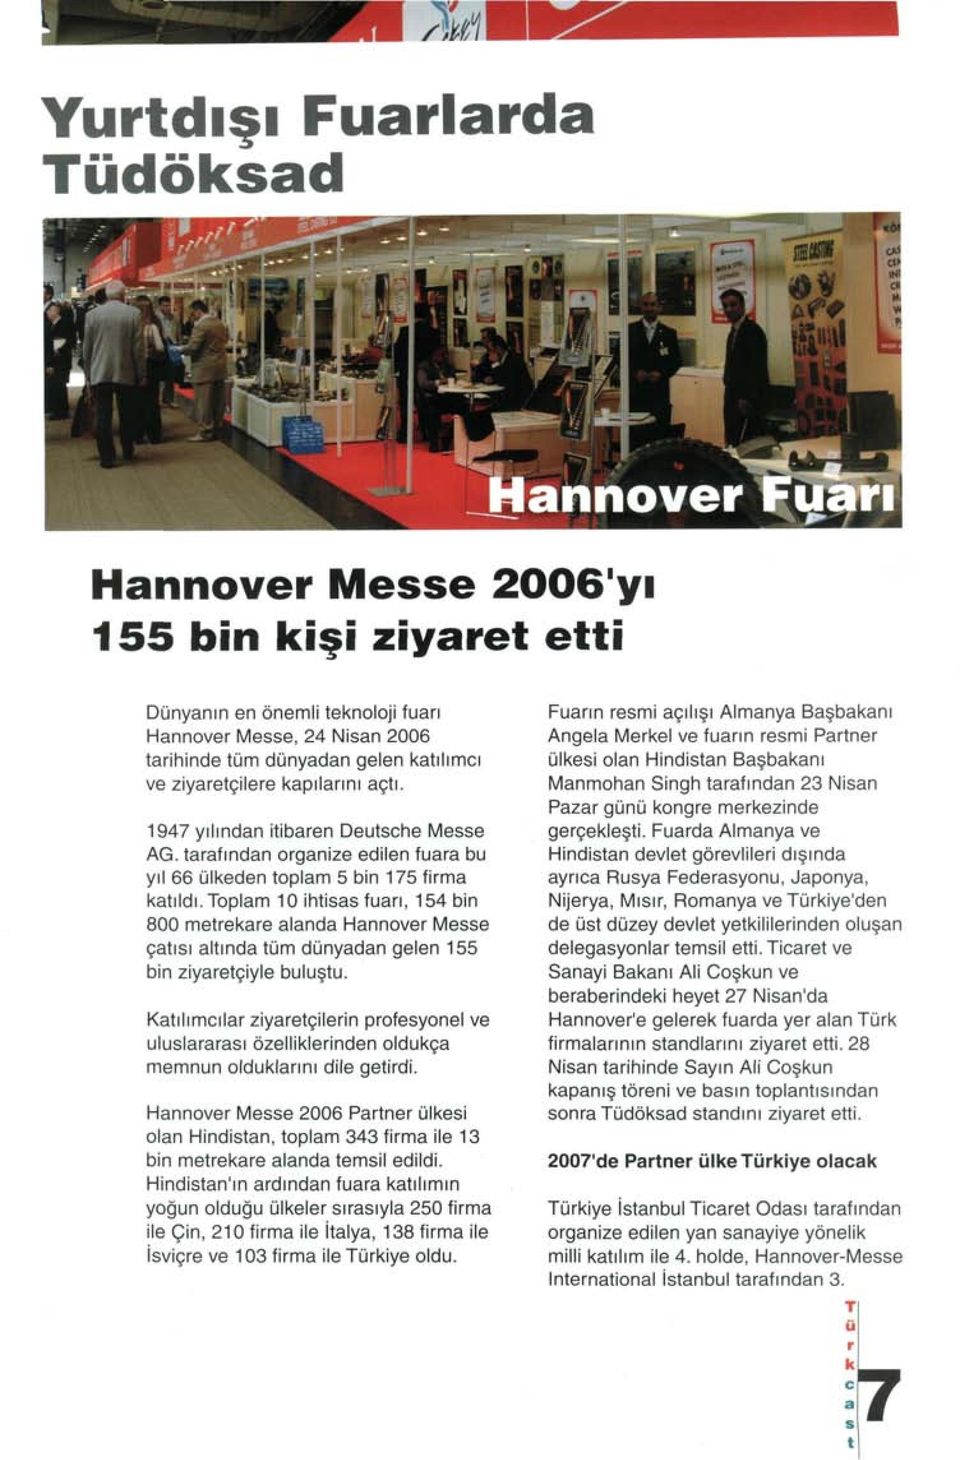 Toplam 10 ihtisas fuarı, 154 bin 800 metrekare alanda Hannover Messe çatısı altında tüm dünyadan gelen 155 bin ziyaretçiyle buluştu.